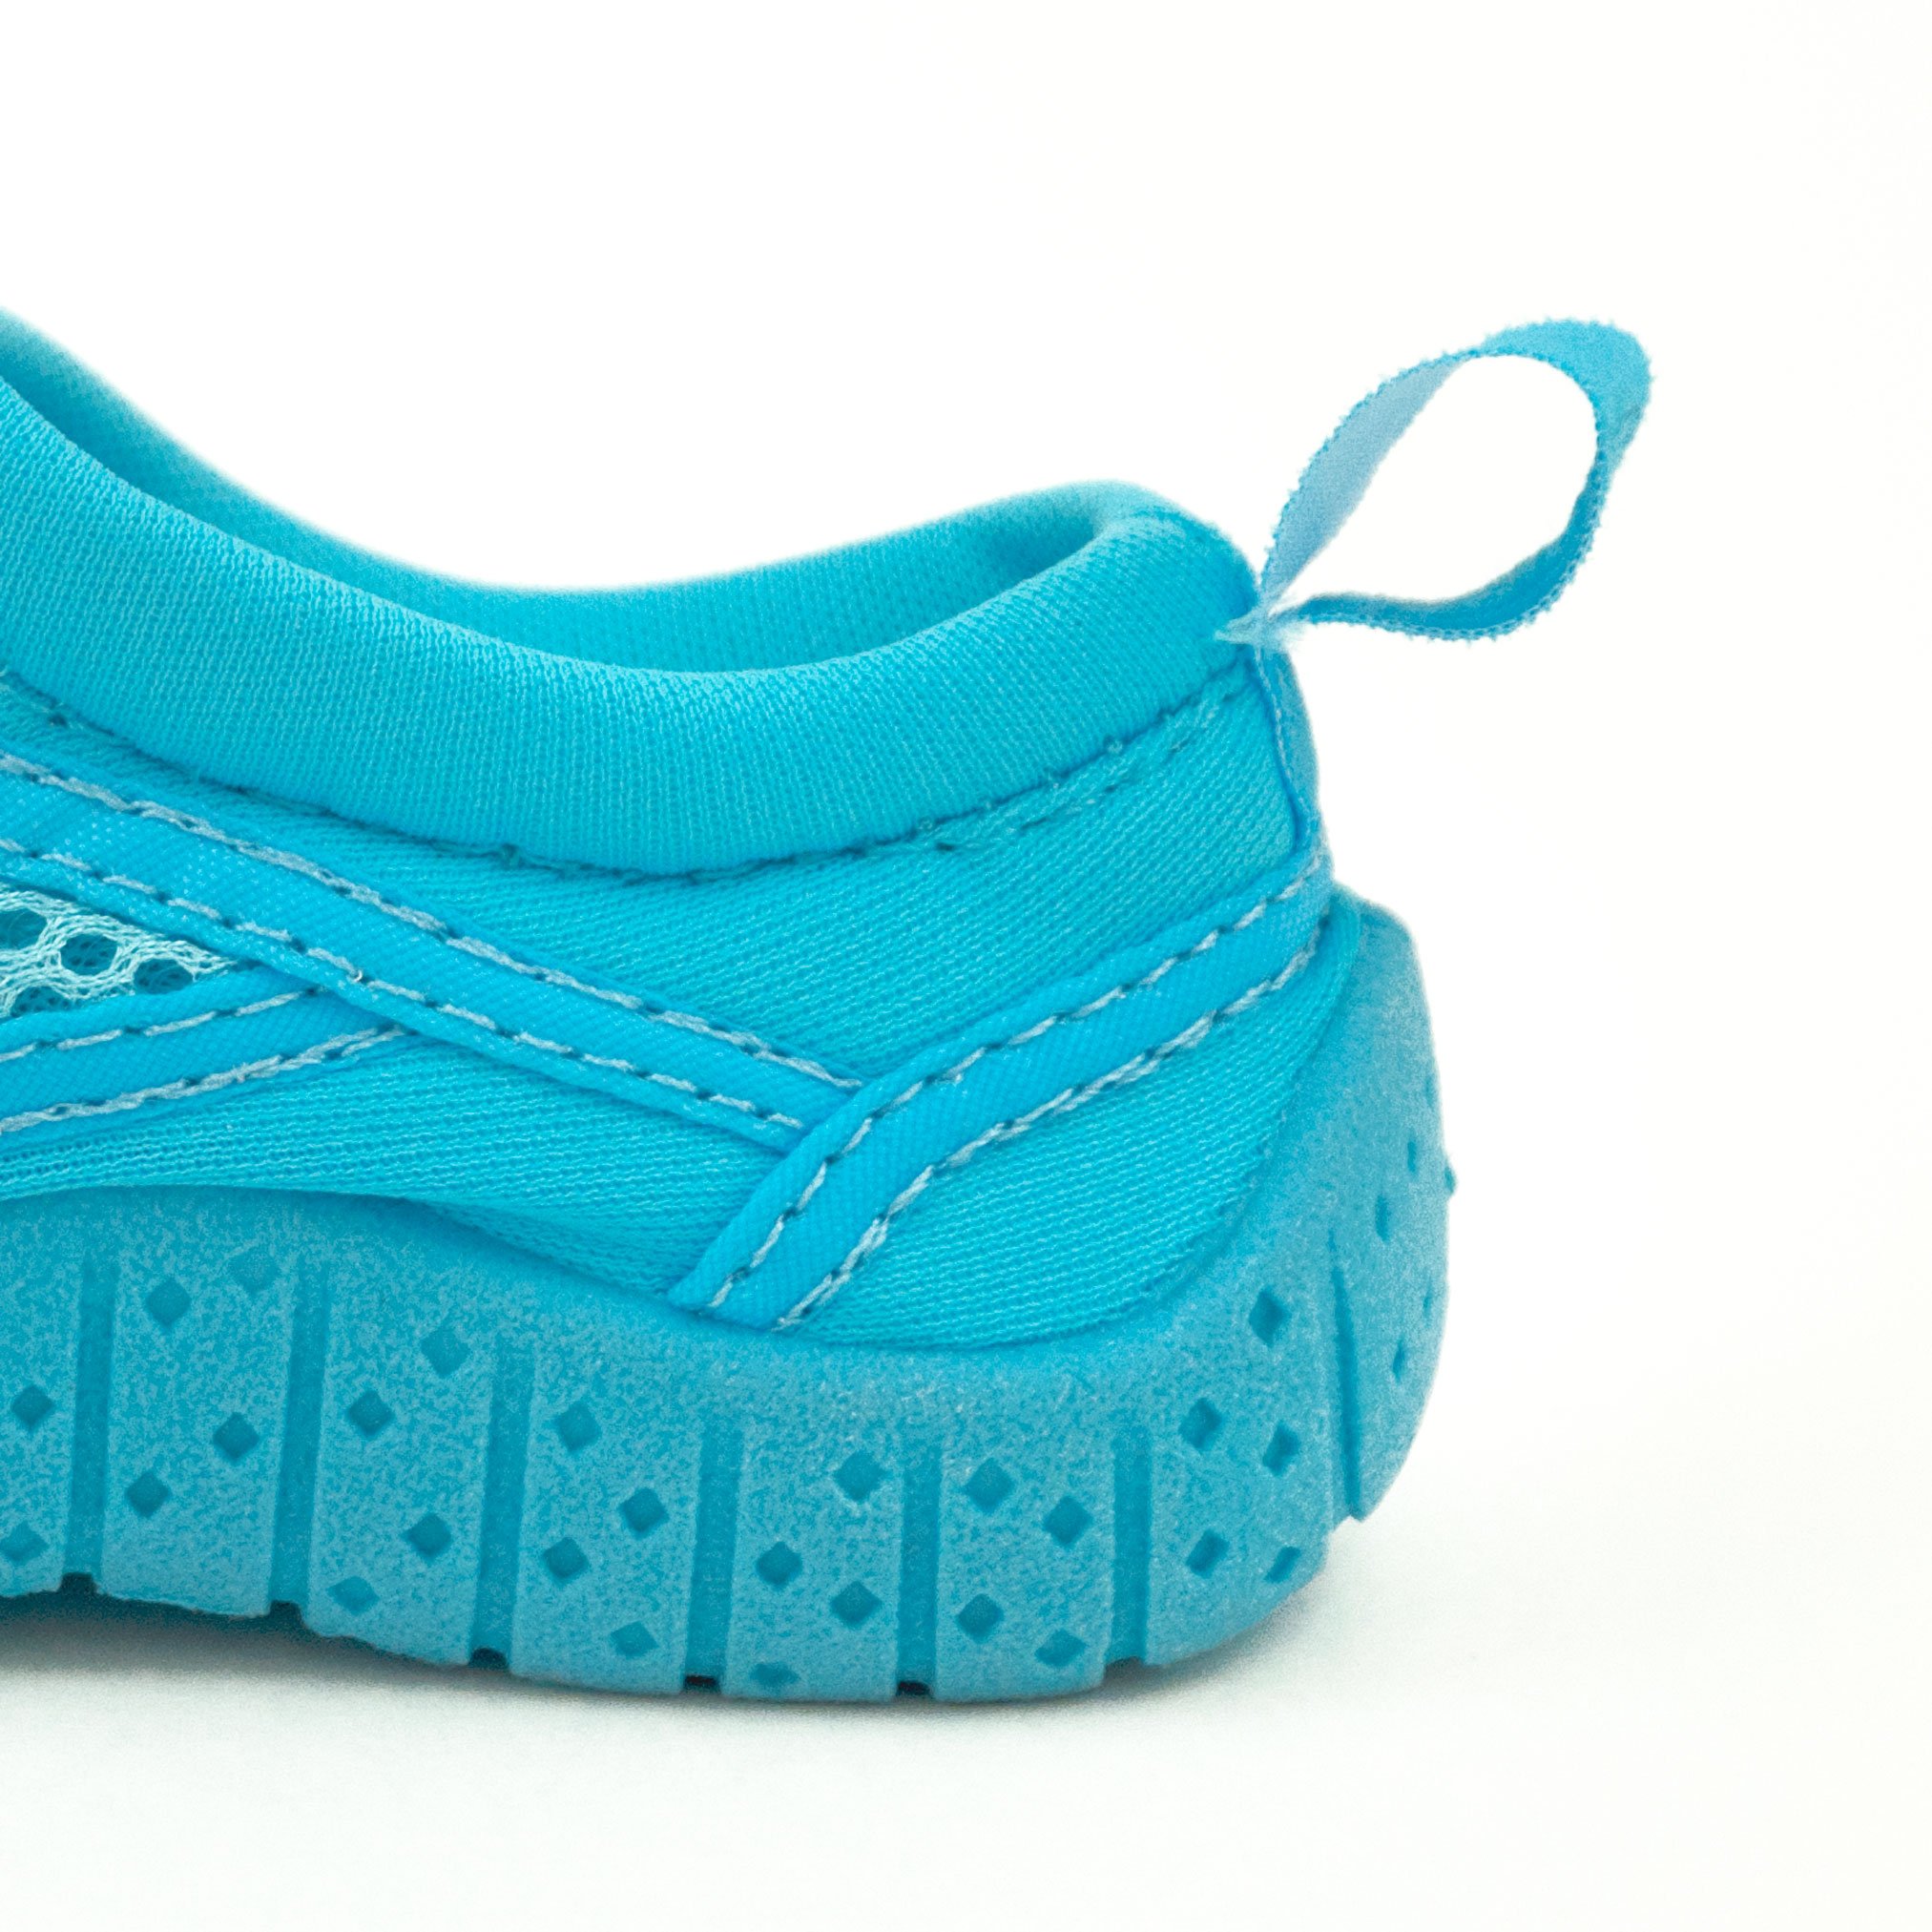 i play. Unisex-Child Water Shoe